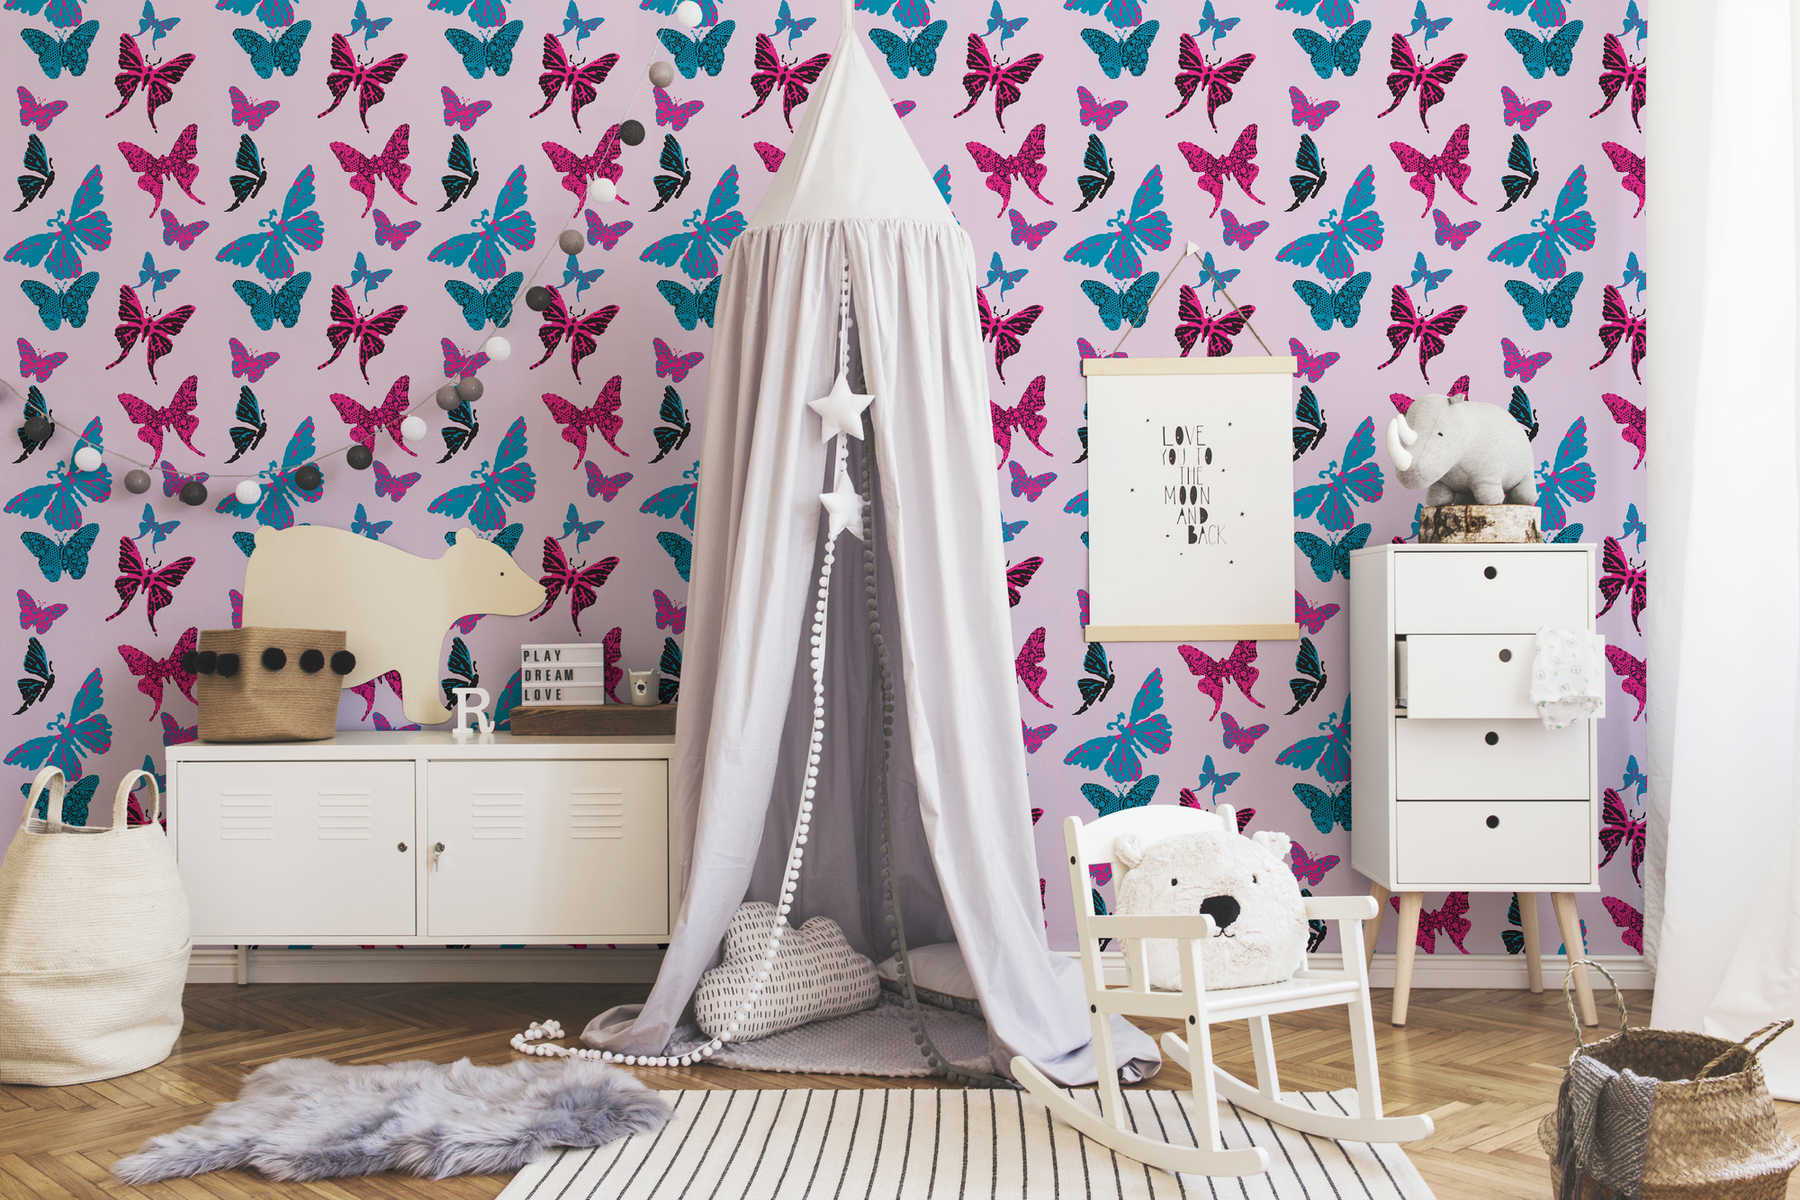             Papel pintado de mariposas en diseño gráfico para la habitación de los niños - Púrpura, Azul
        